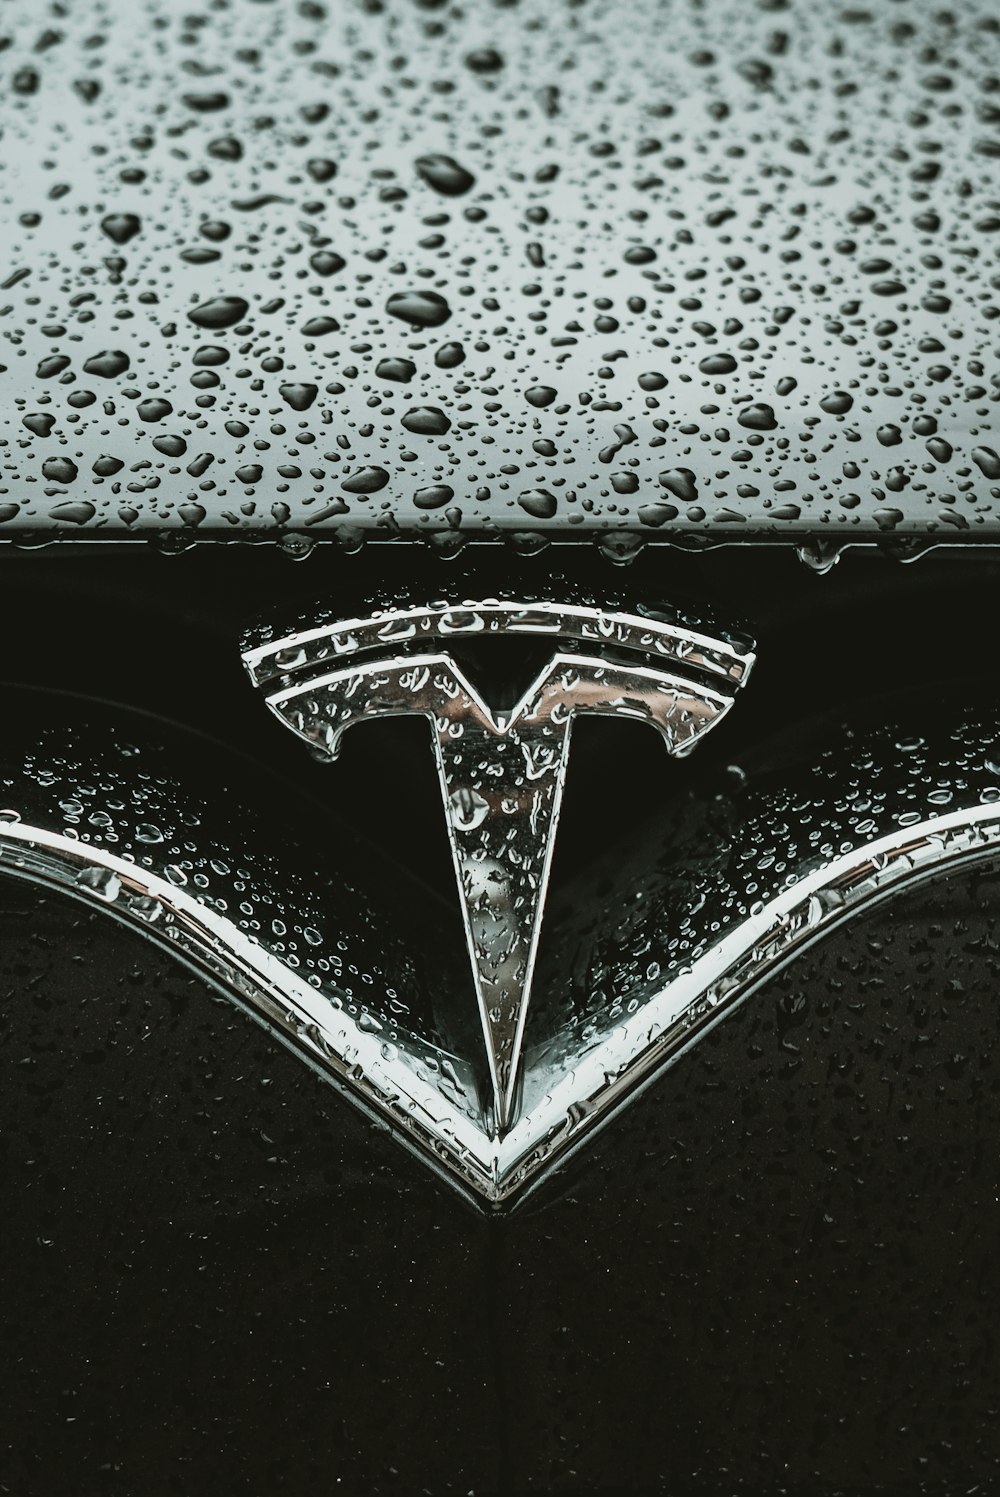 Eine Nahaufnahme des Emblems eines Autos auf nasser Oberfläche